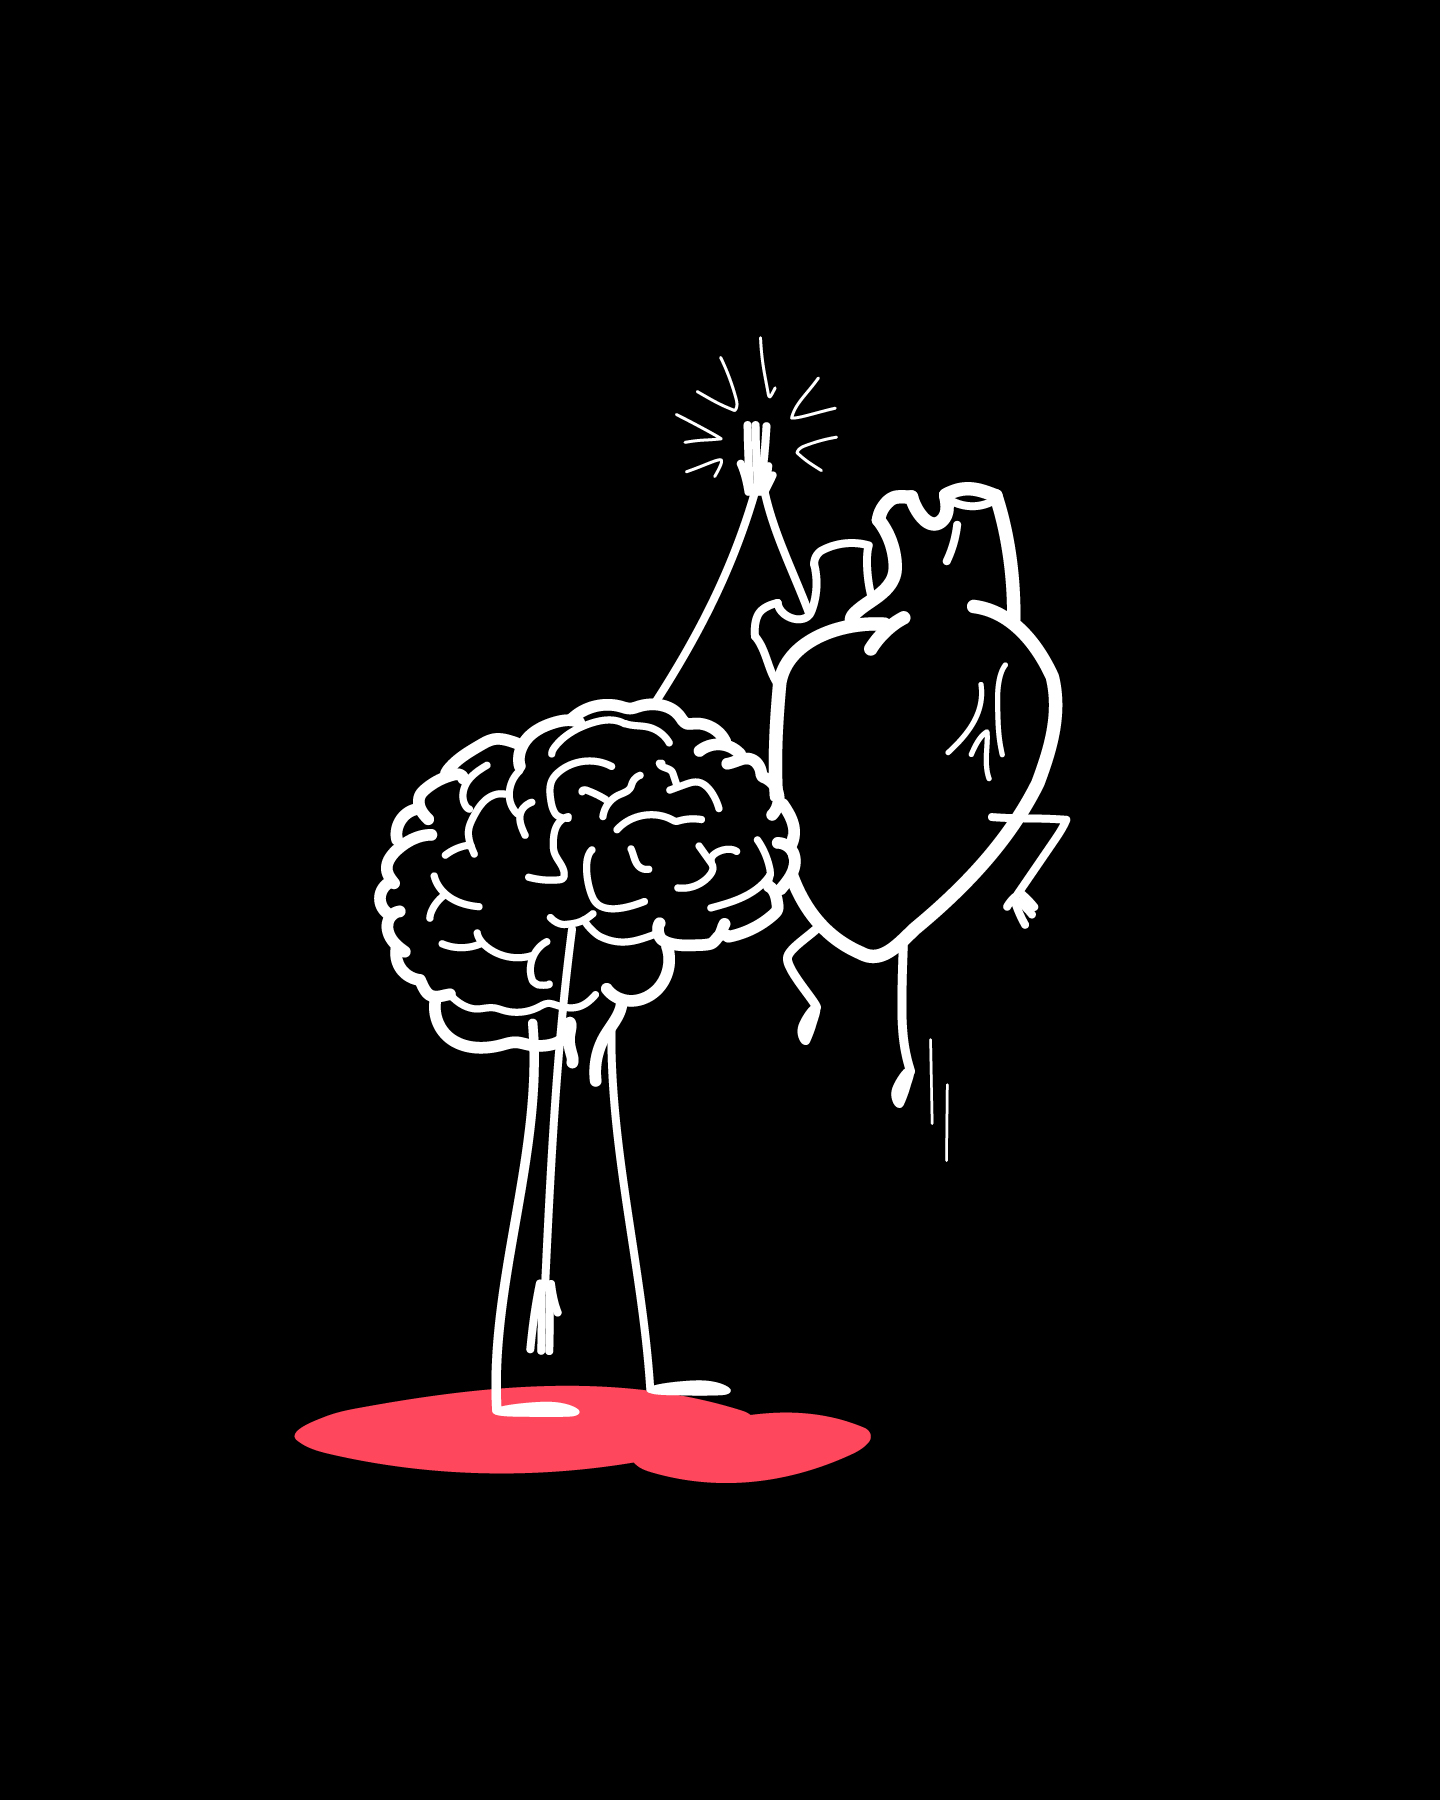 Moment de complicité entre le coeur et le cerveau